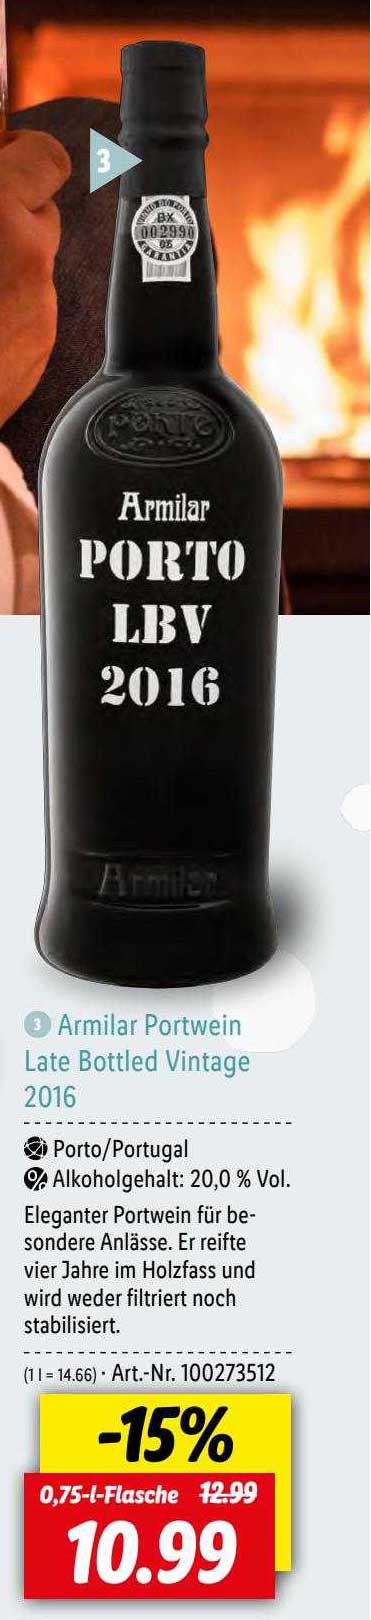 Armilar Portwein Late Bottled Vintage 2016 Angebot bei Lidl